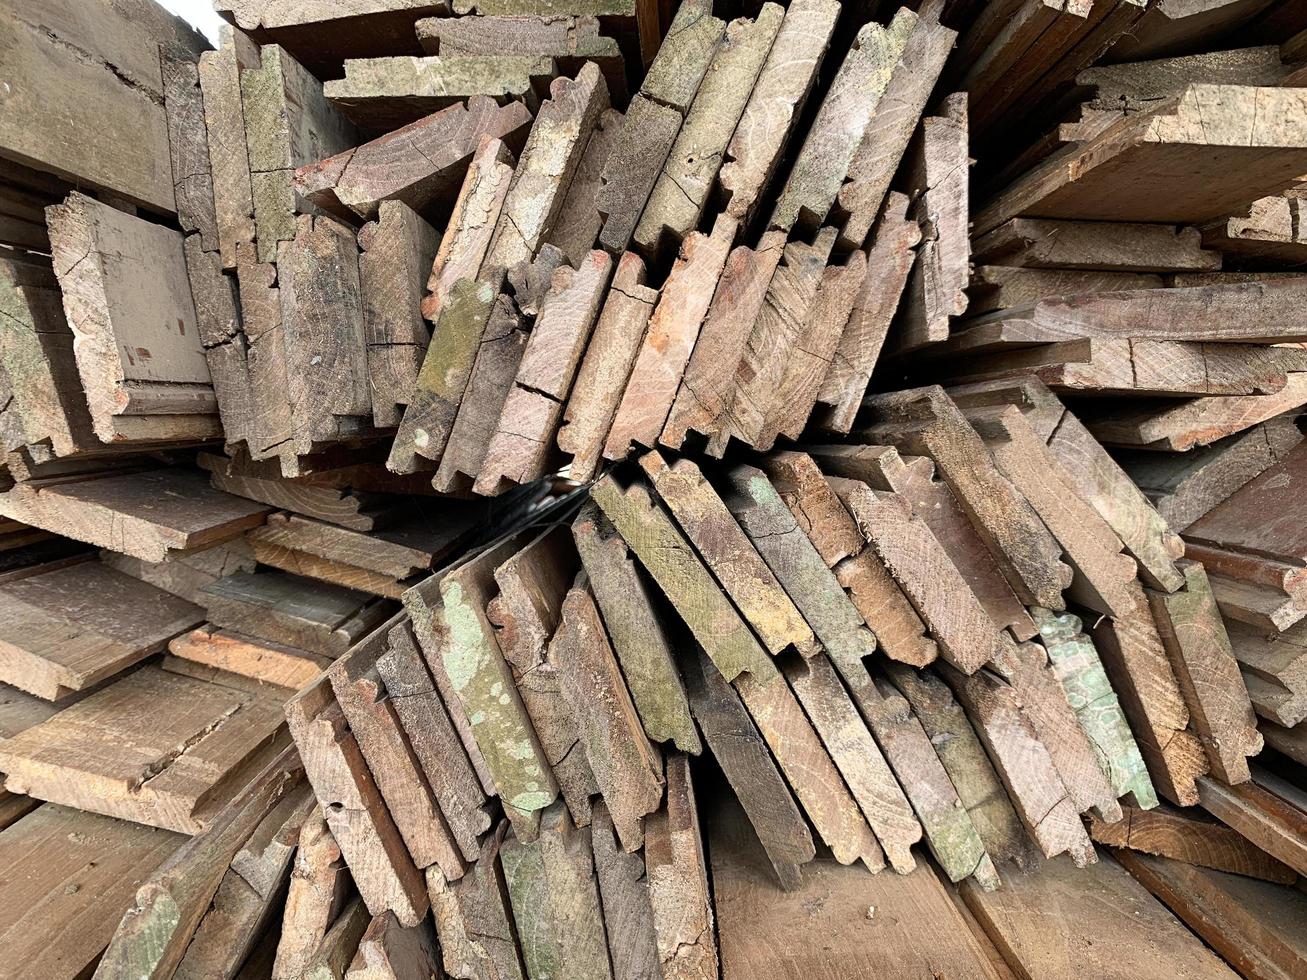 arrière-plan abstrait en bois empilé de manière irrégulière, vieilles planches de bois se préparant à la construction de la maison, motif sur le bord de plusieurs morceaux de bois.photo mobile photo